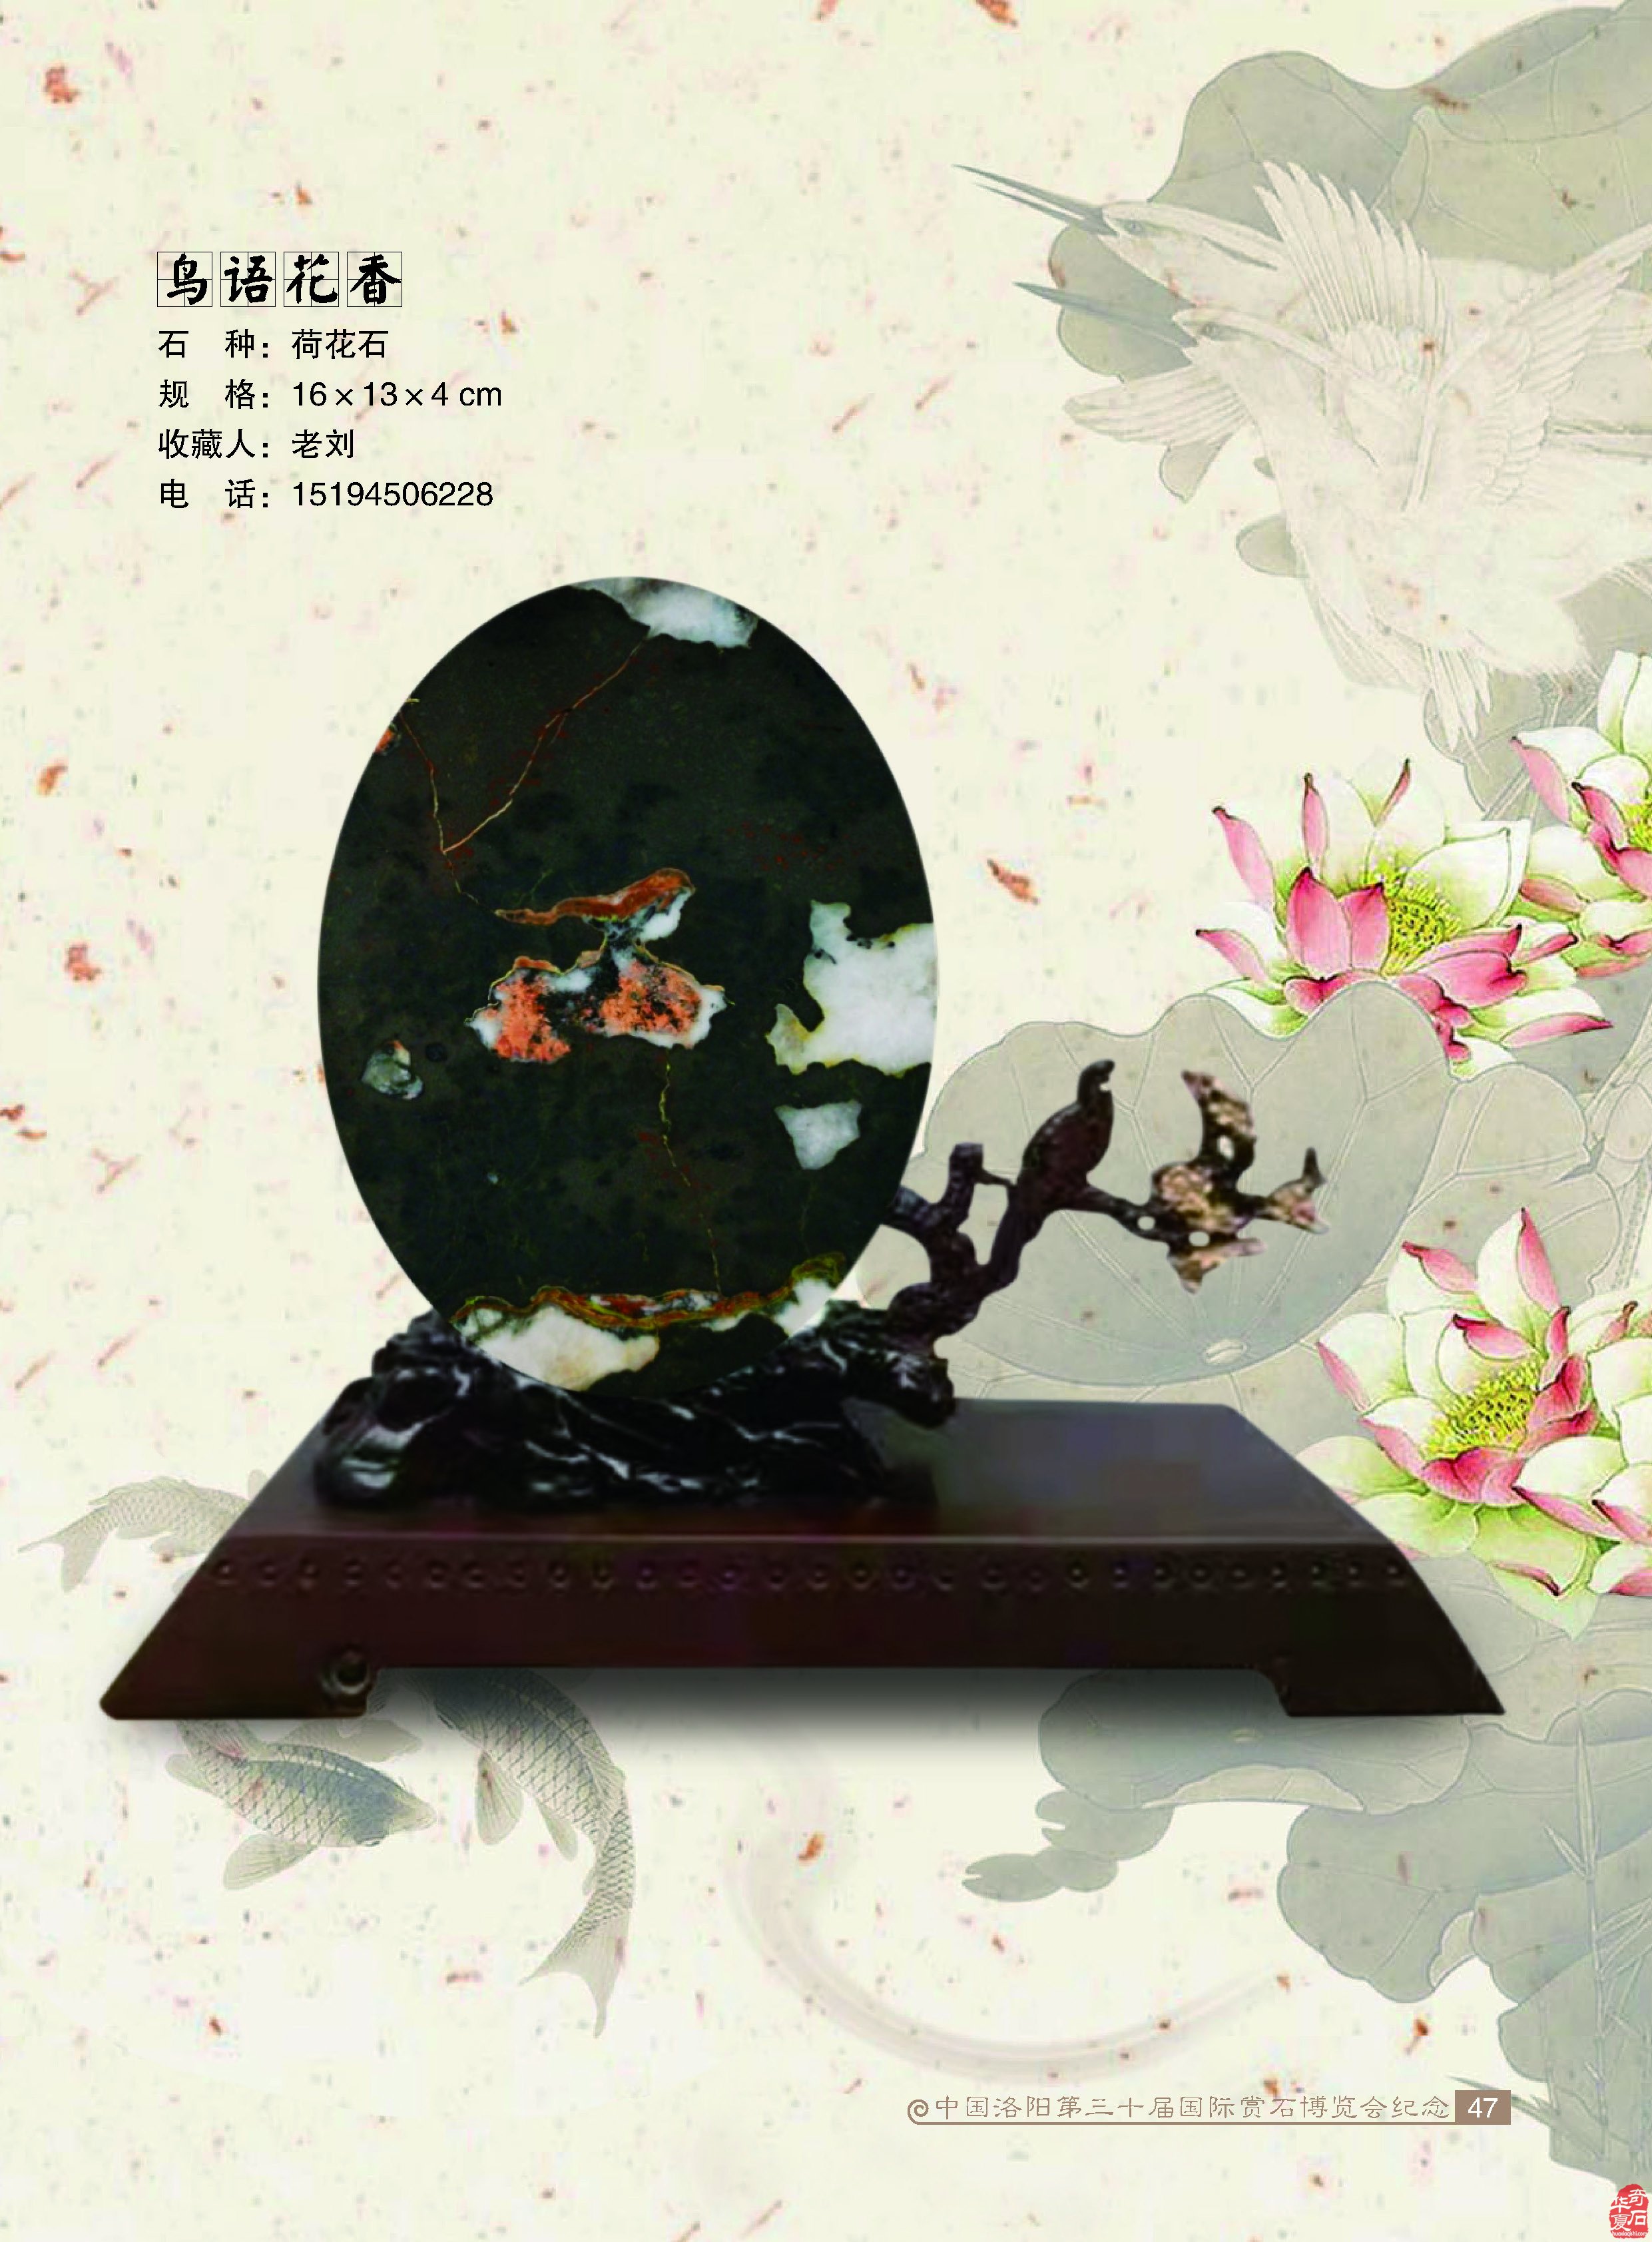 喜讯：洛阳石展被确立为39届牡丹文化节主题活动